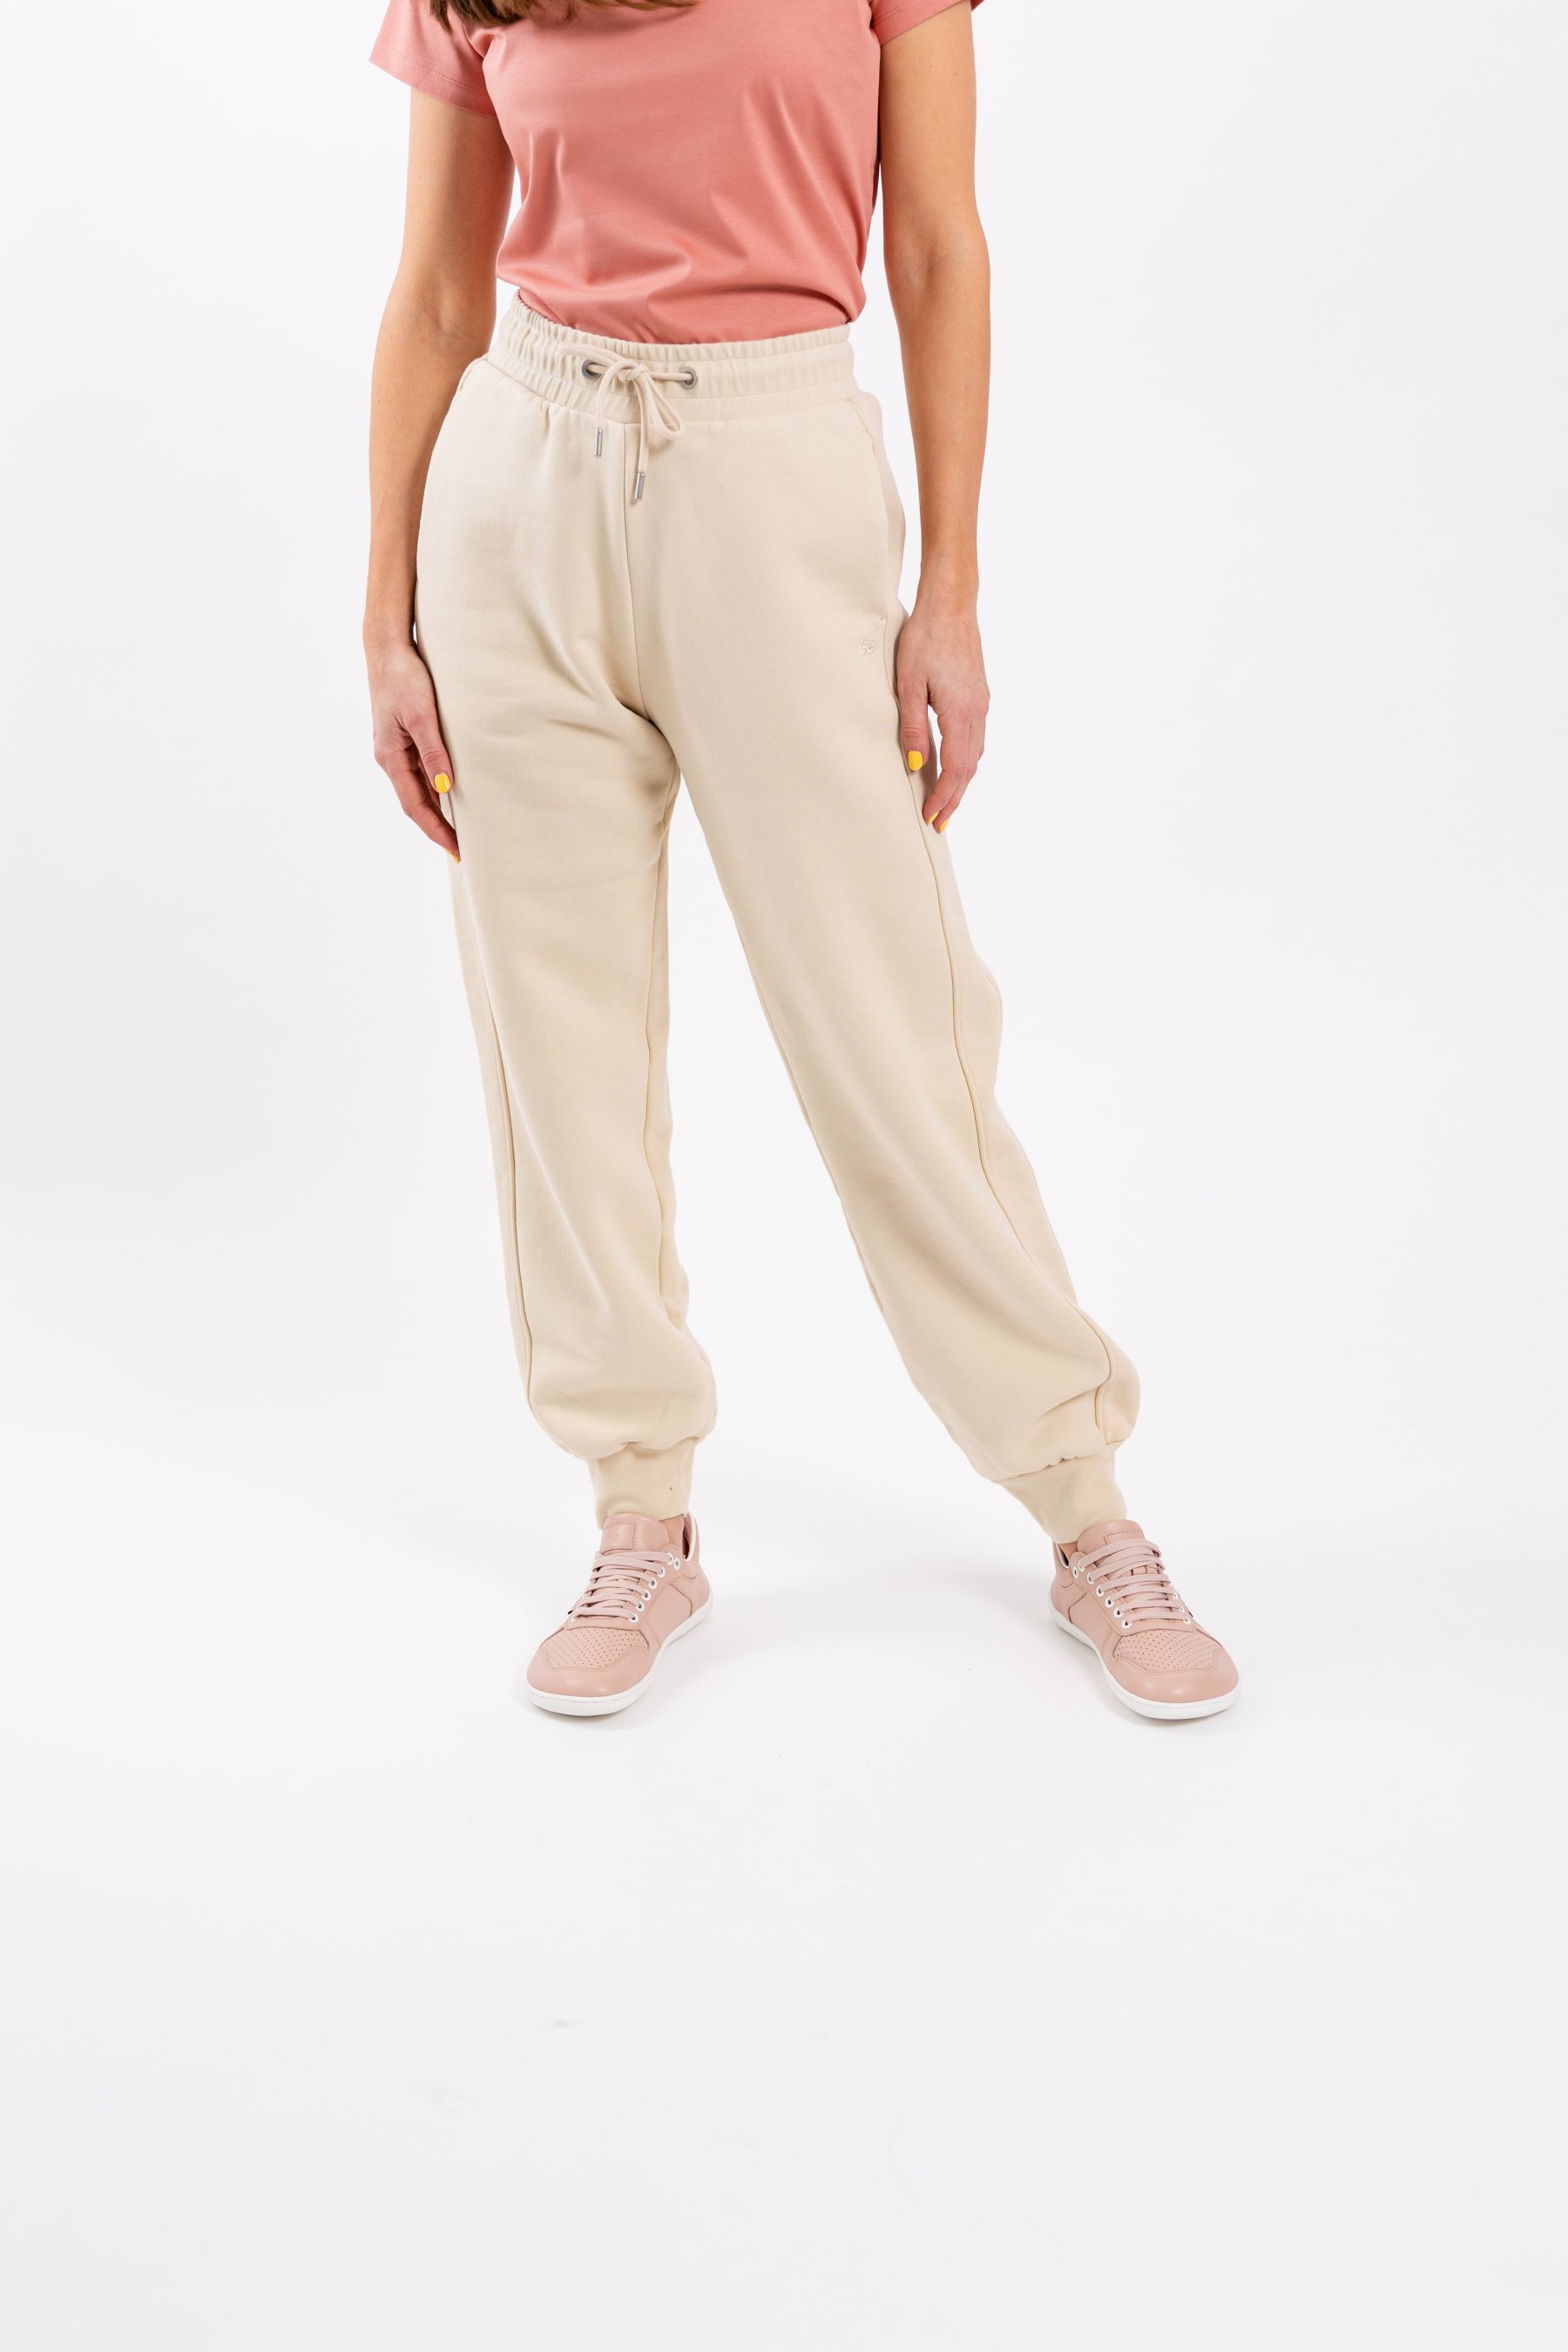 Buy Beige Trousers & Pants for Women by Broadstar Online | Ajio.com